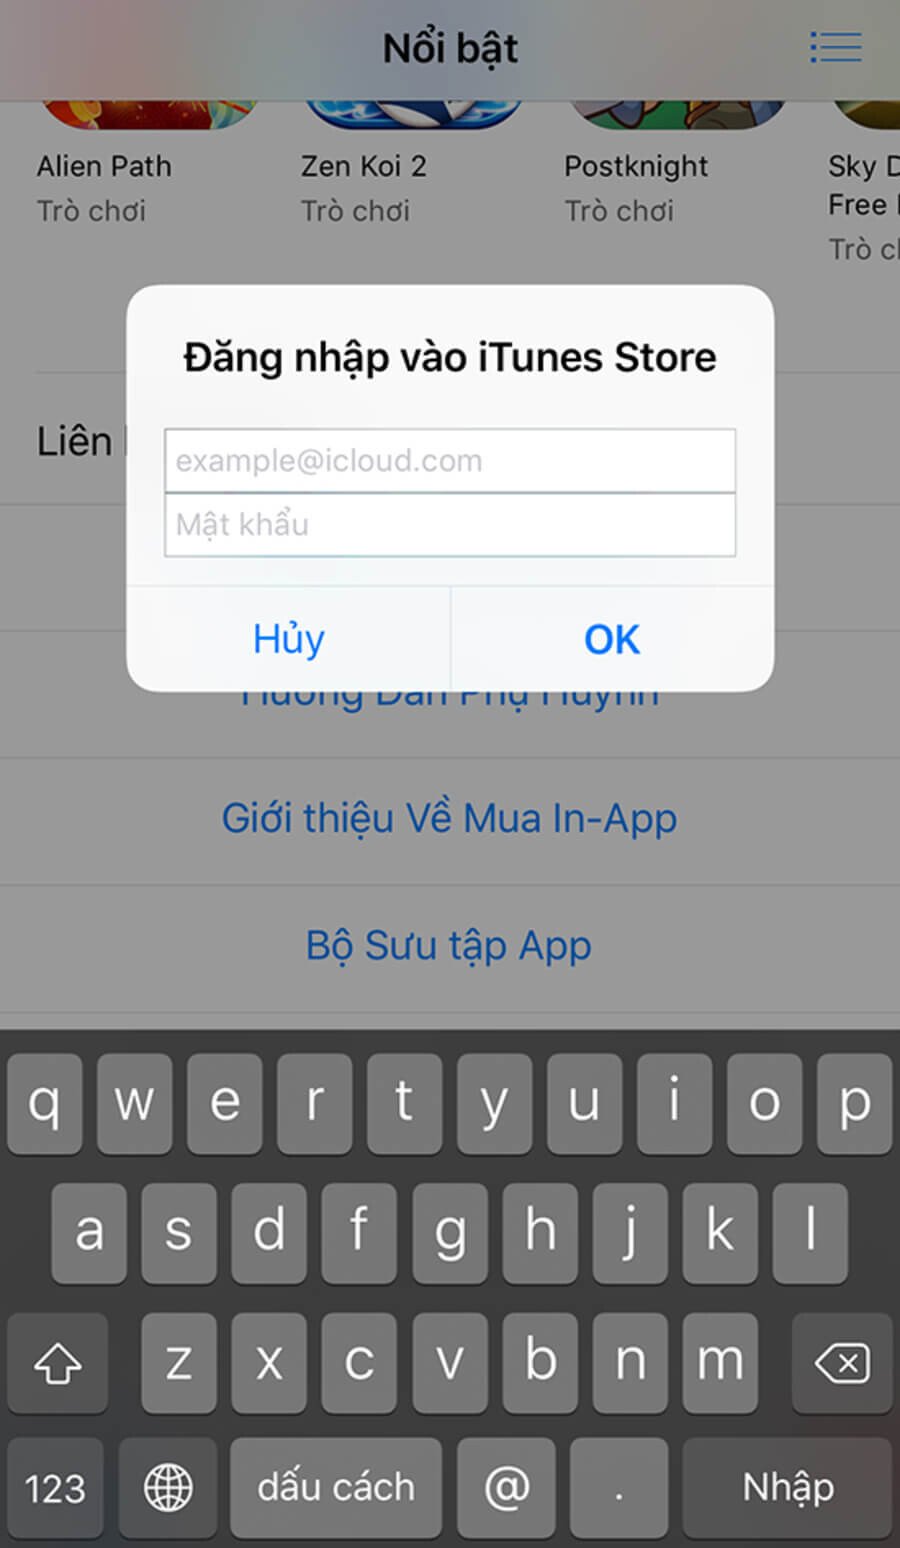 Hướng dẫn tạo tài khoản Apple ID trong 3 phút bằng iPhone - Hình 8